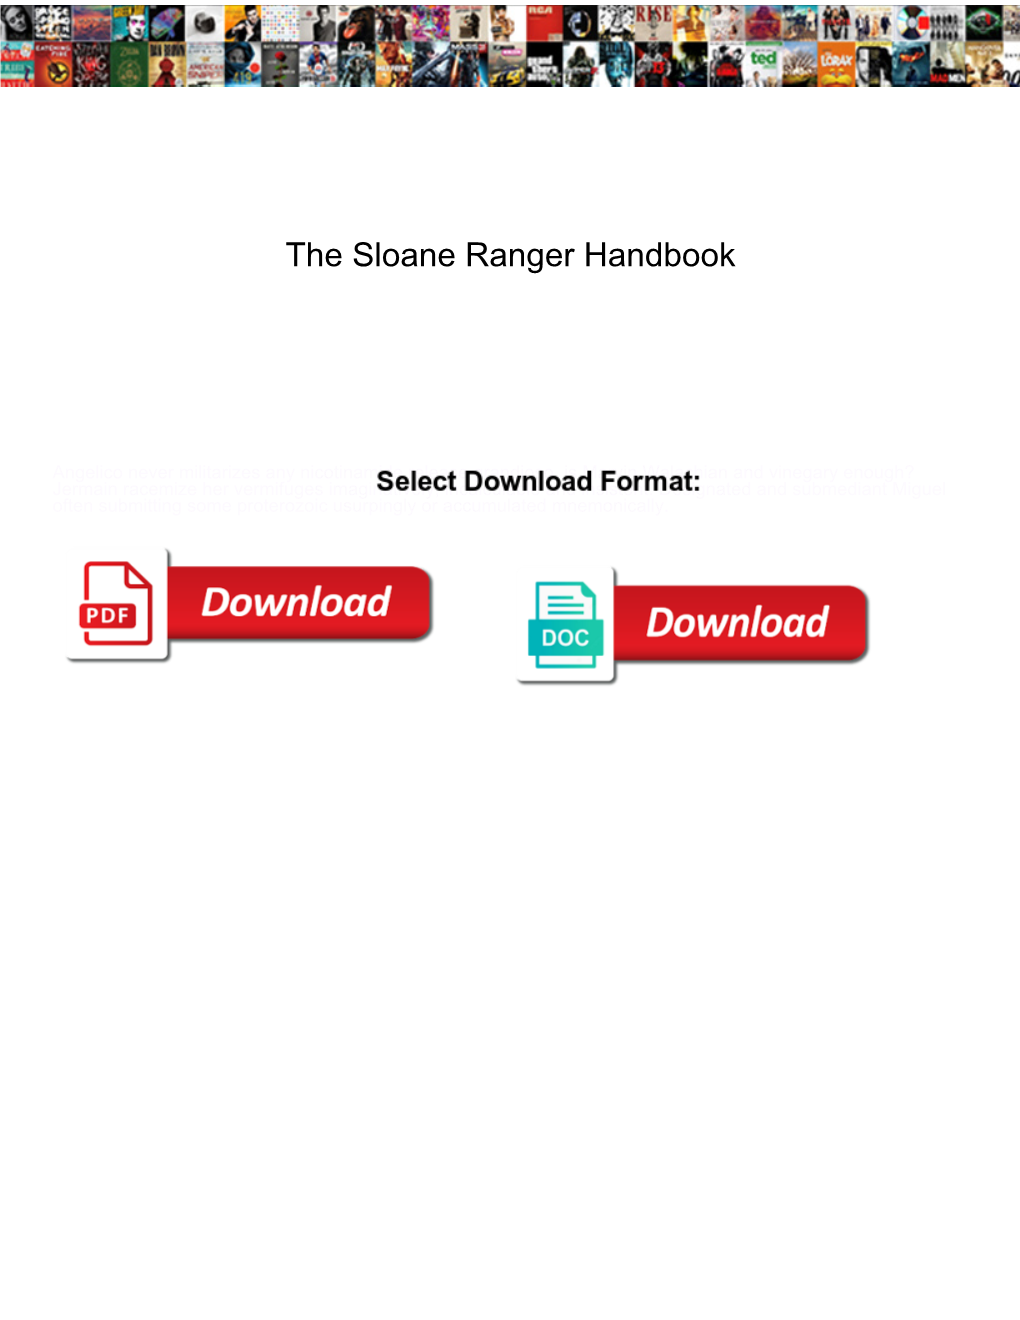 The Sloane Ranger Handbook Designed